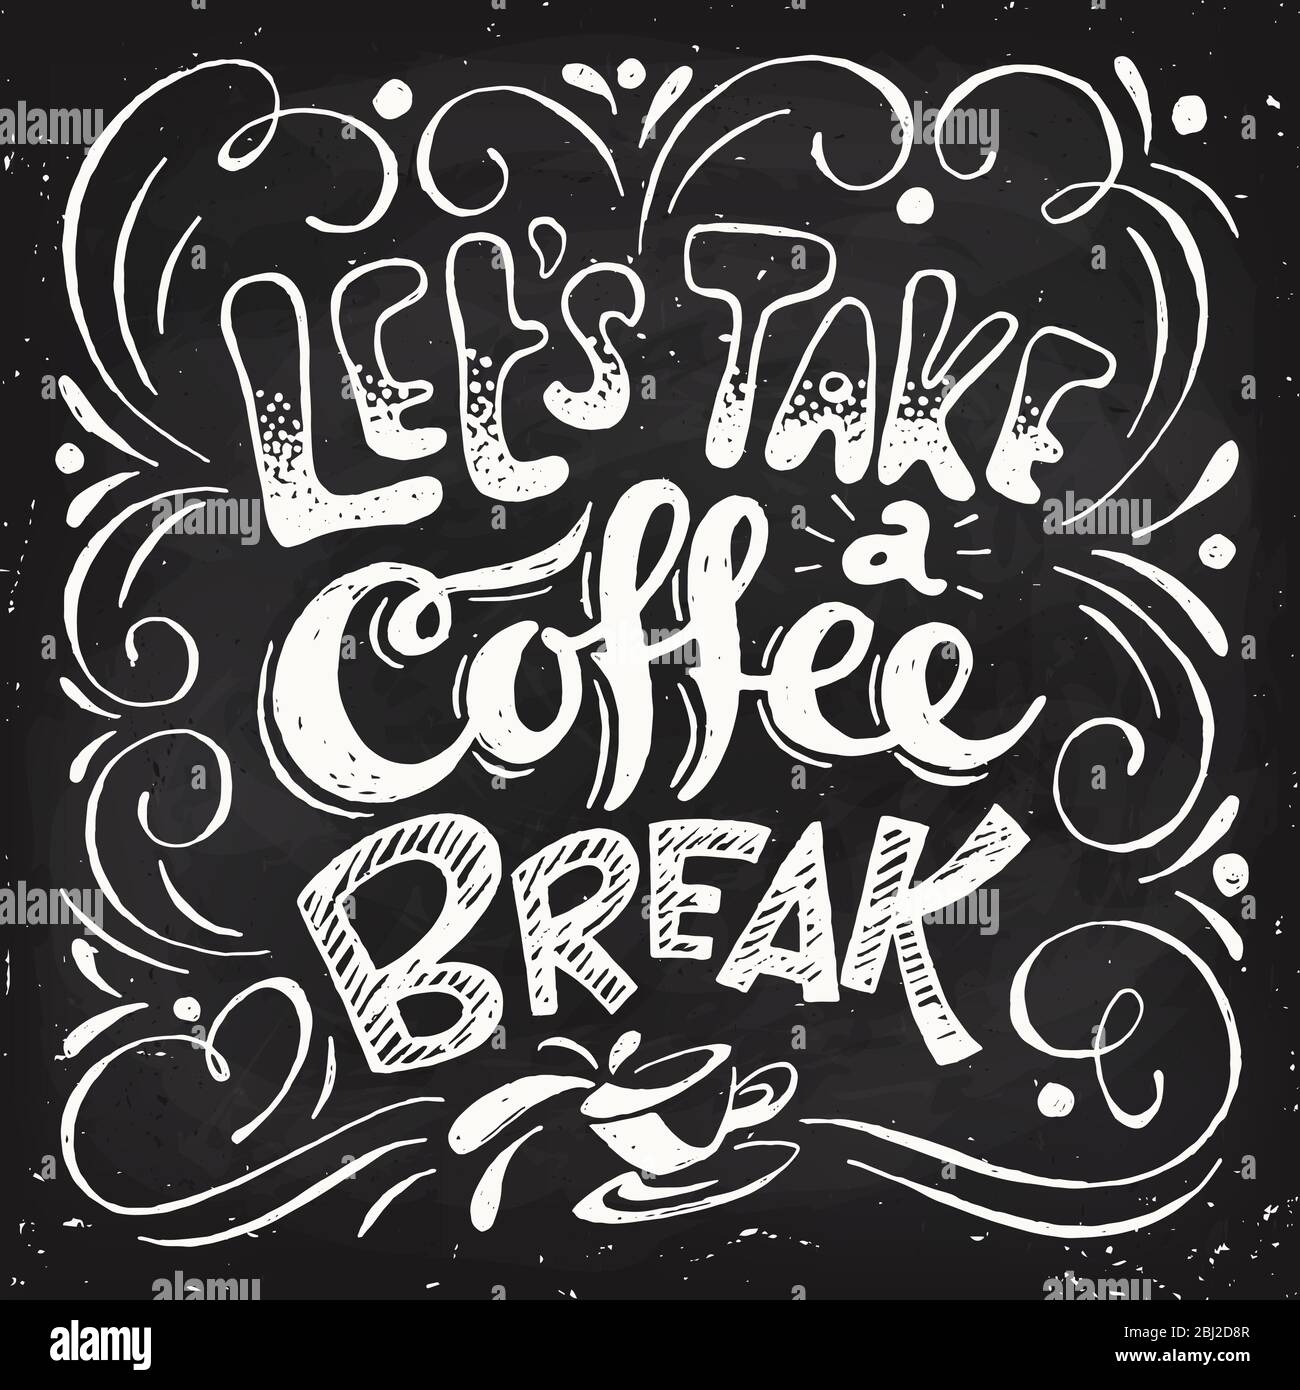 https://c8.alamy.com/comp/2BJ2D8R/vector-coffee-break-lettering-hand-written-design-2BJ2D8R.jpg